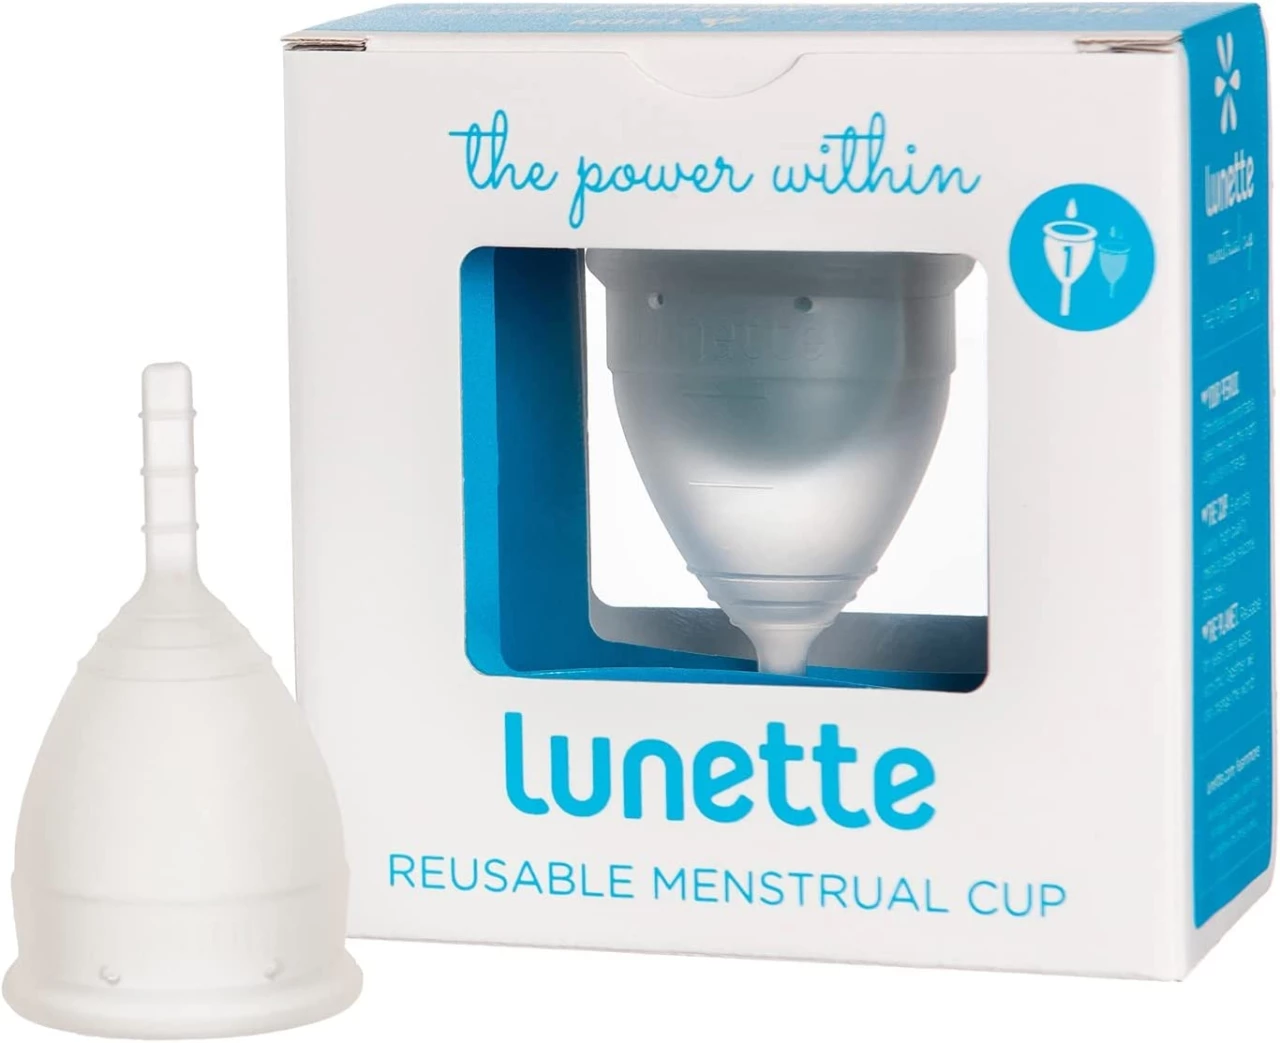 Lunette Copa menstrual reutilizable - Transparente - Modelo 1 para flujo ligero (EN versión)